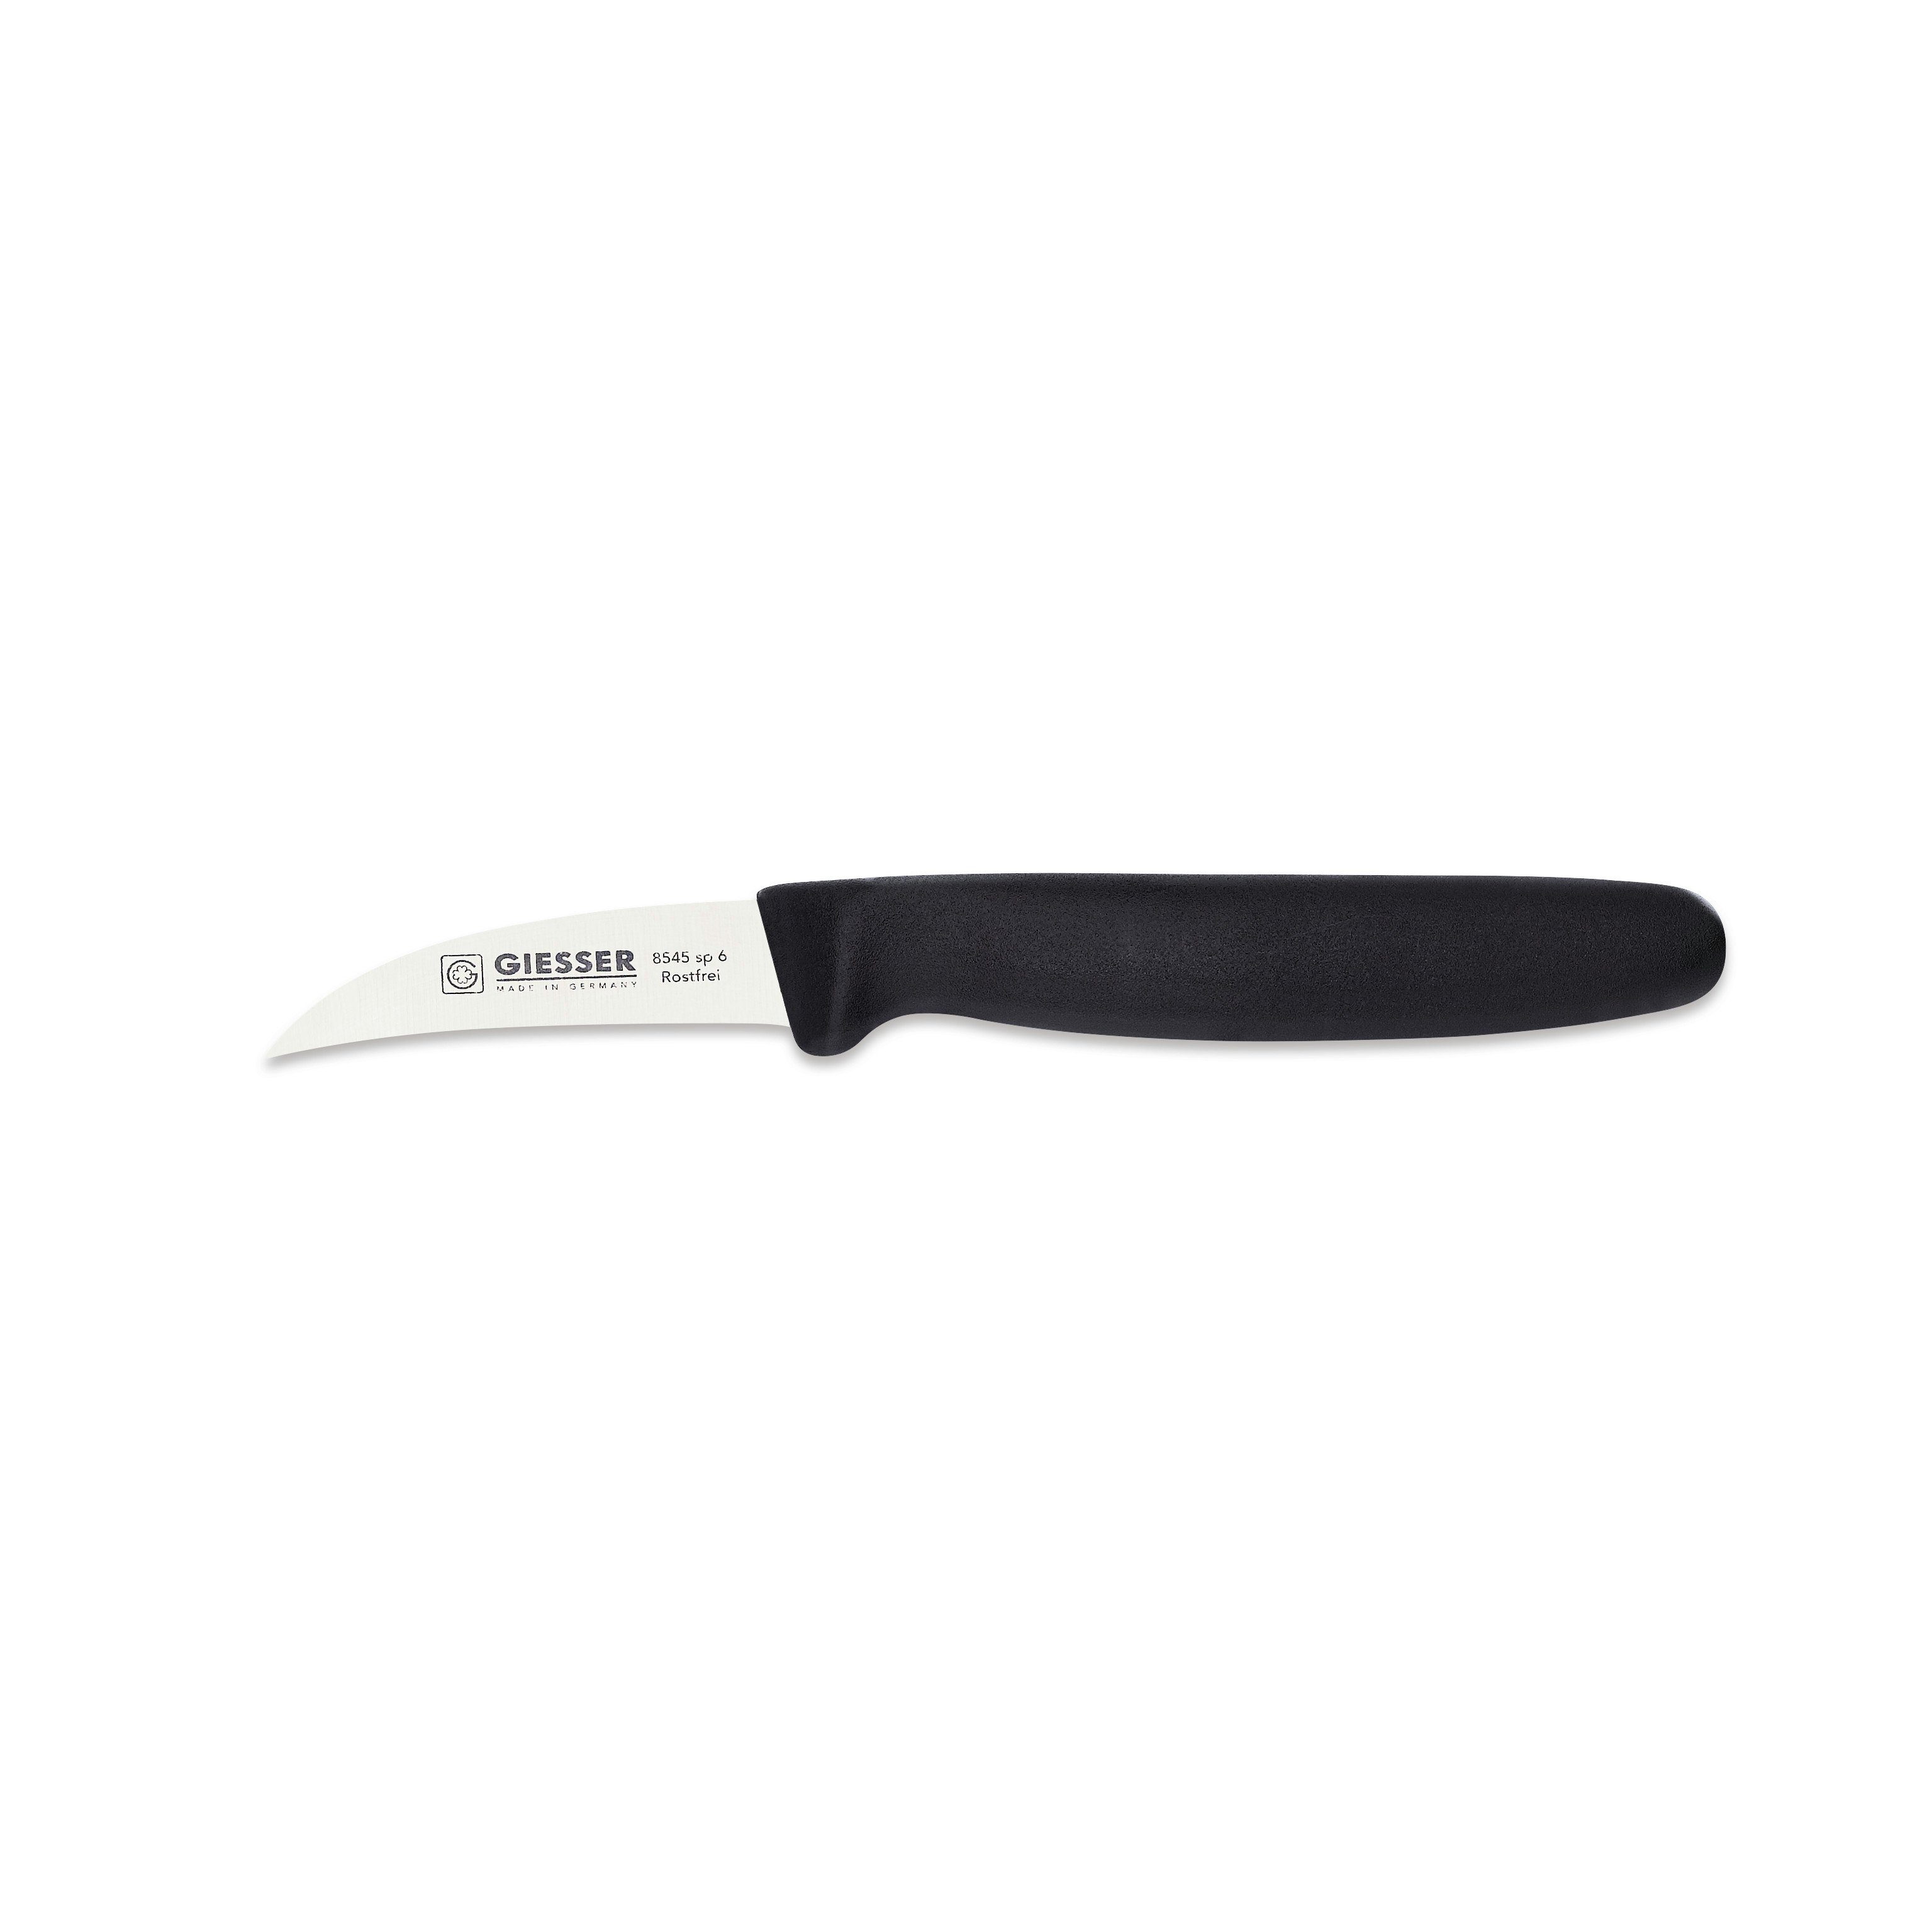 Giesser Messer Schälmesser Gemüsemesser 8545 sp 6, Handabzug, Klinge 6 cm Hohle-Schneide schwarz